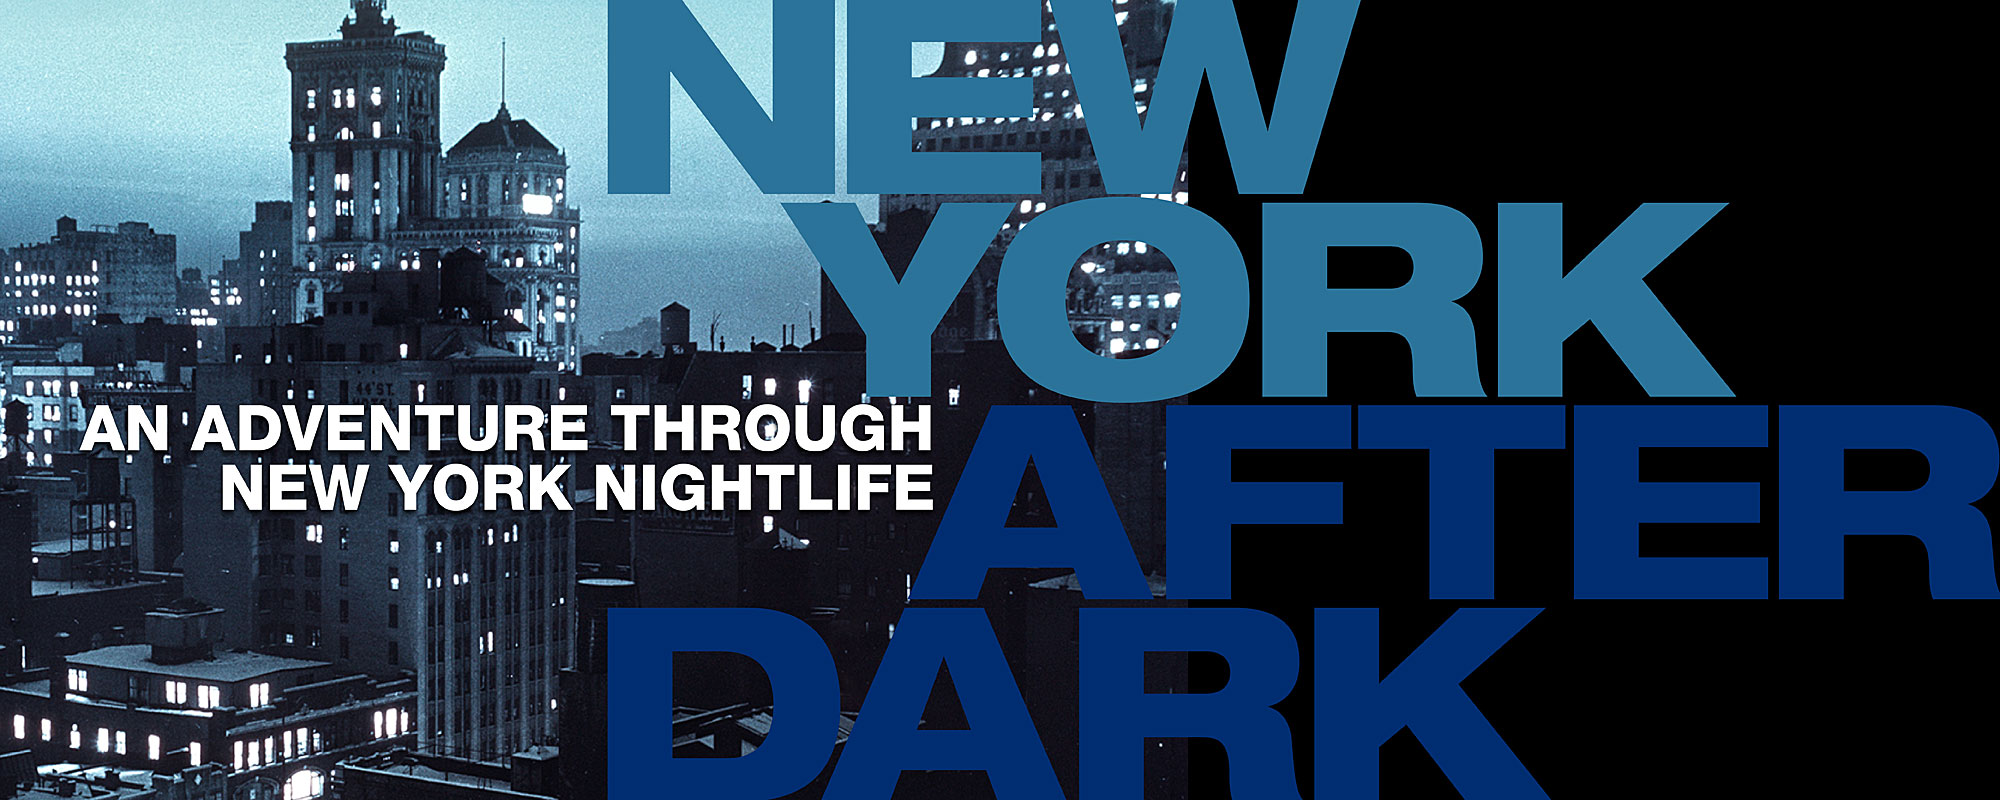 纽约市博物馆的《天黑后纽约》图片